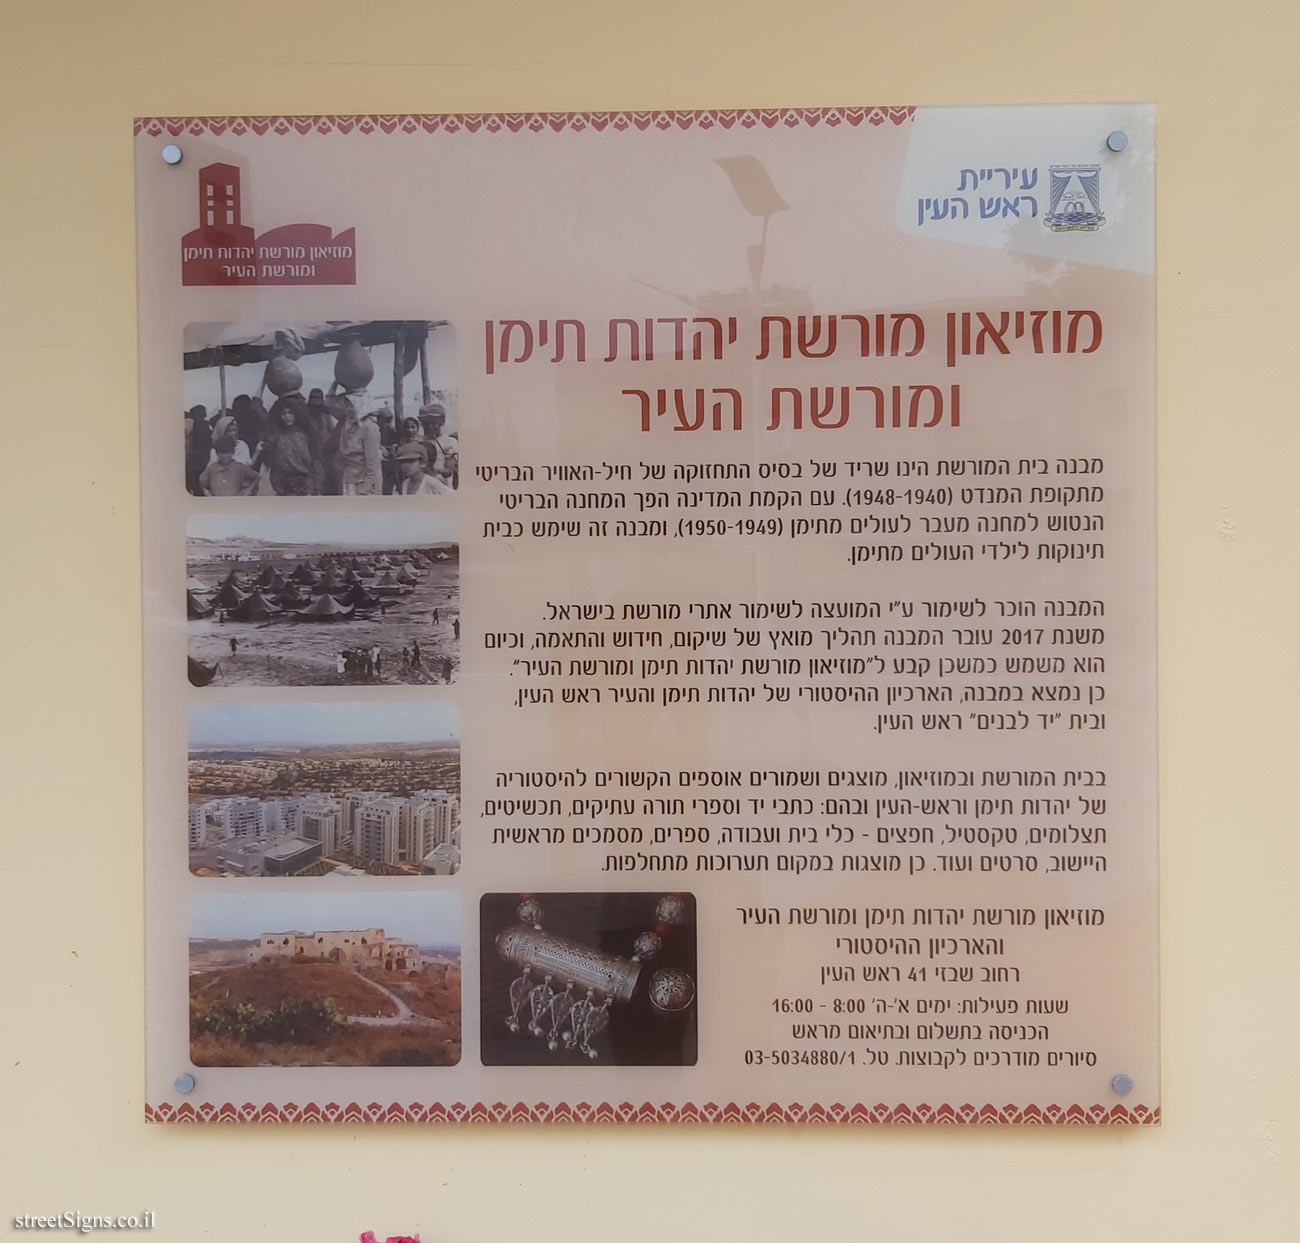 Rosh HaAyin - Museum of Yemenite Jewish Heritage and City Heritage